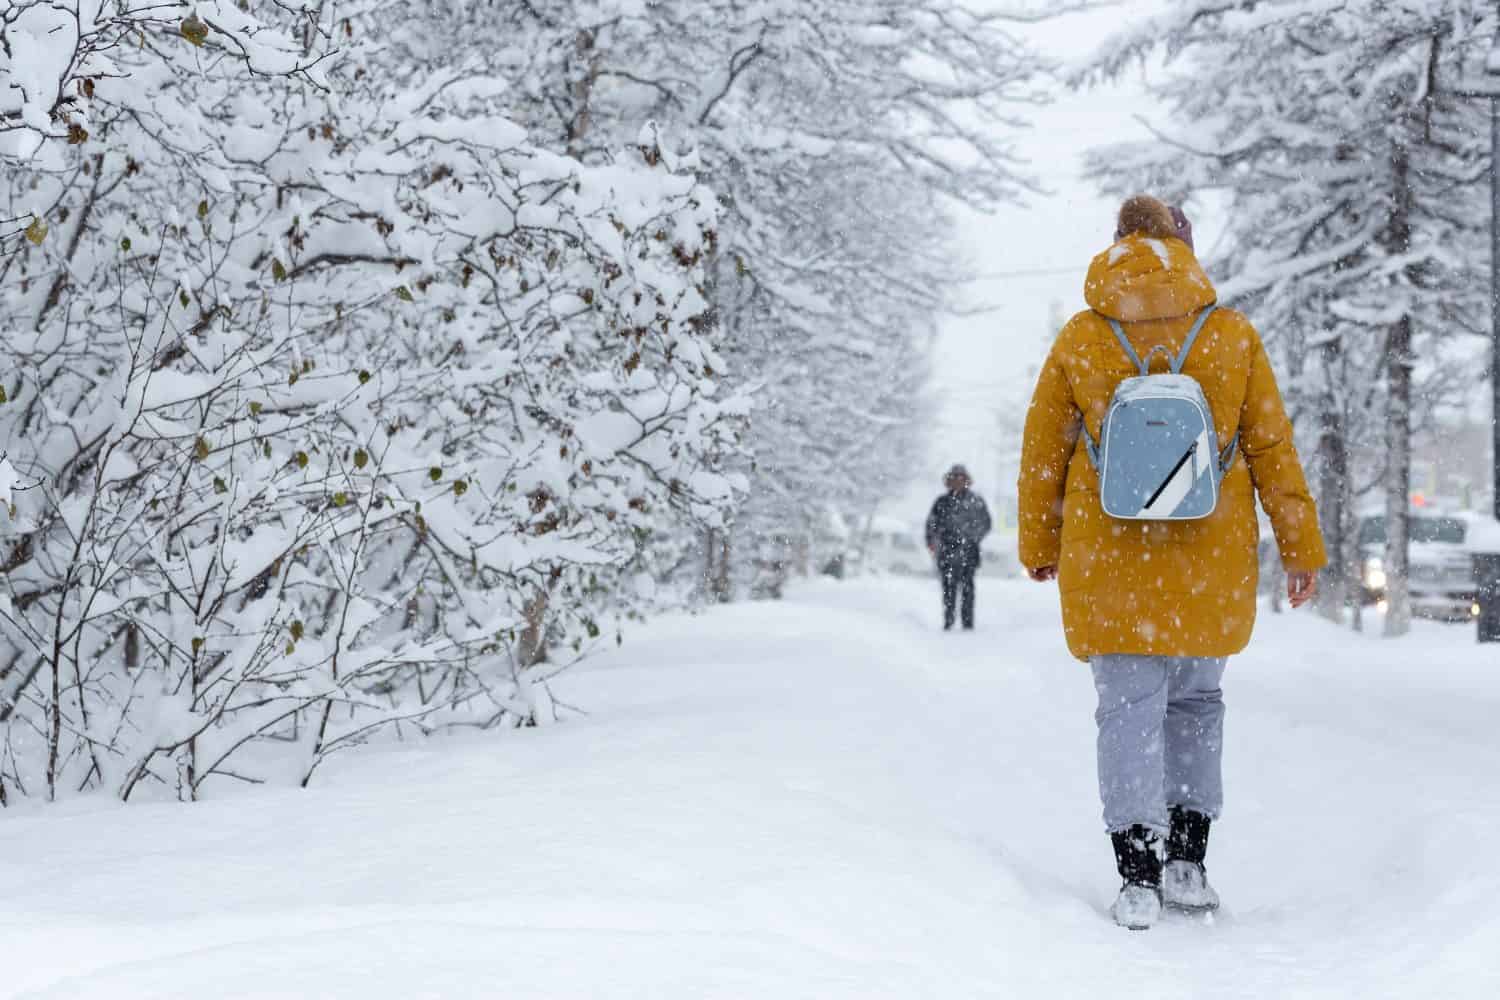 La gente cammina su un marciapiede innevato durante una forte nevicata.  Molta neve sul terreno e rami di alberi e cespugli.  Freddo clima invernale nevoso.  Donna in caldi abiti invernali con uno zaino.